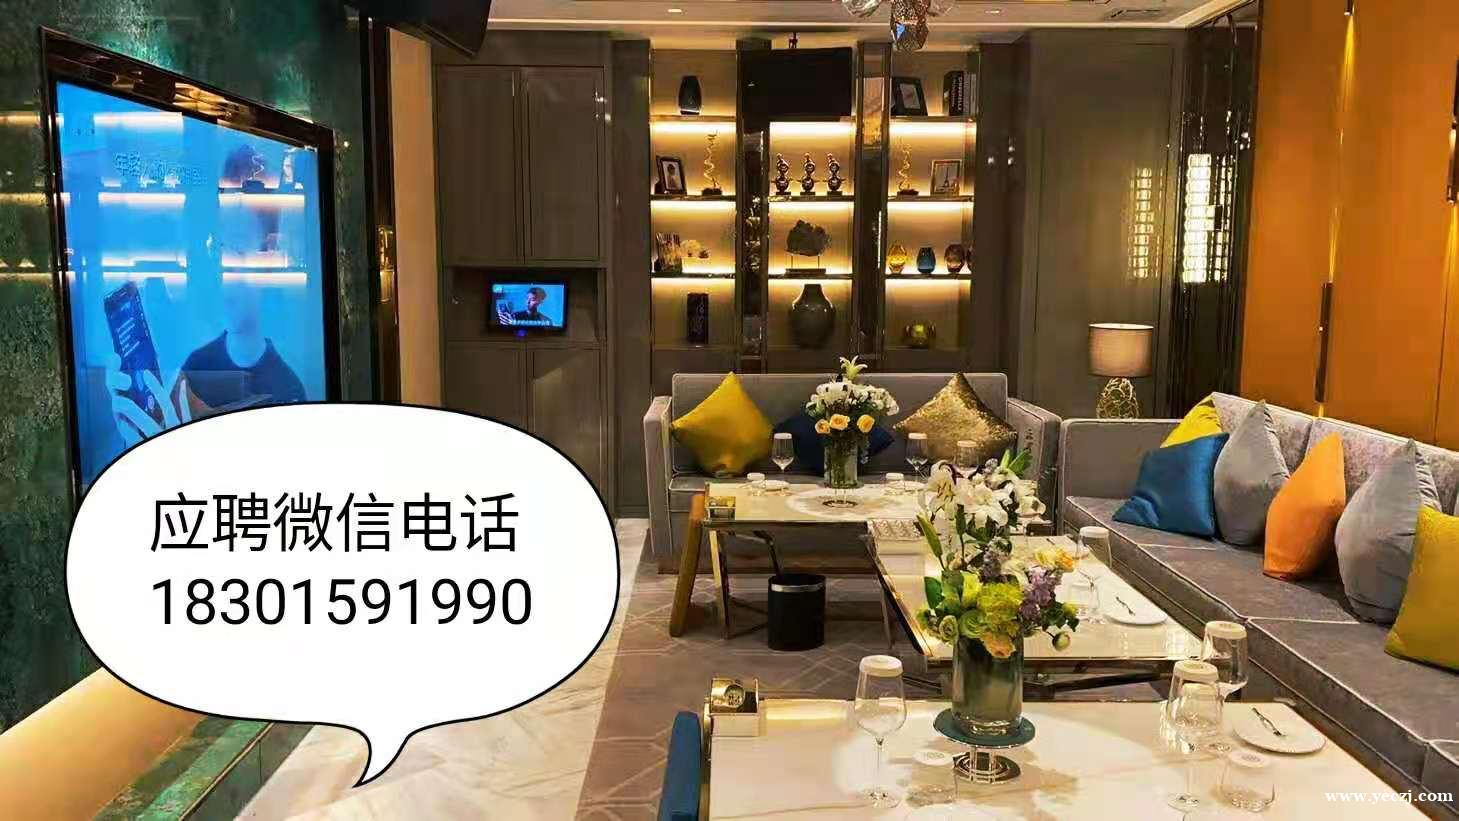 上海高端商务KTV模特招聘信息-日结2000起步 包住宿 无费用